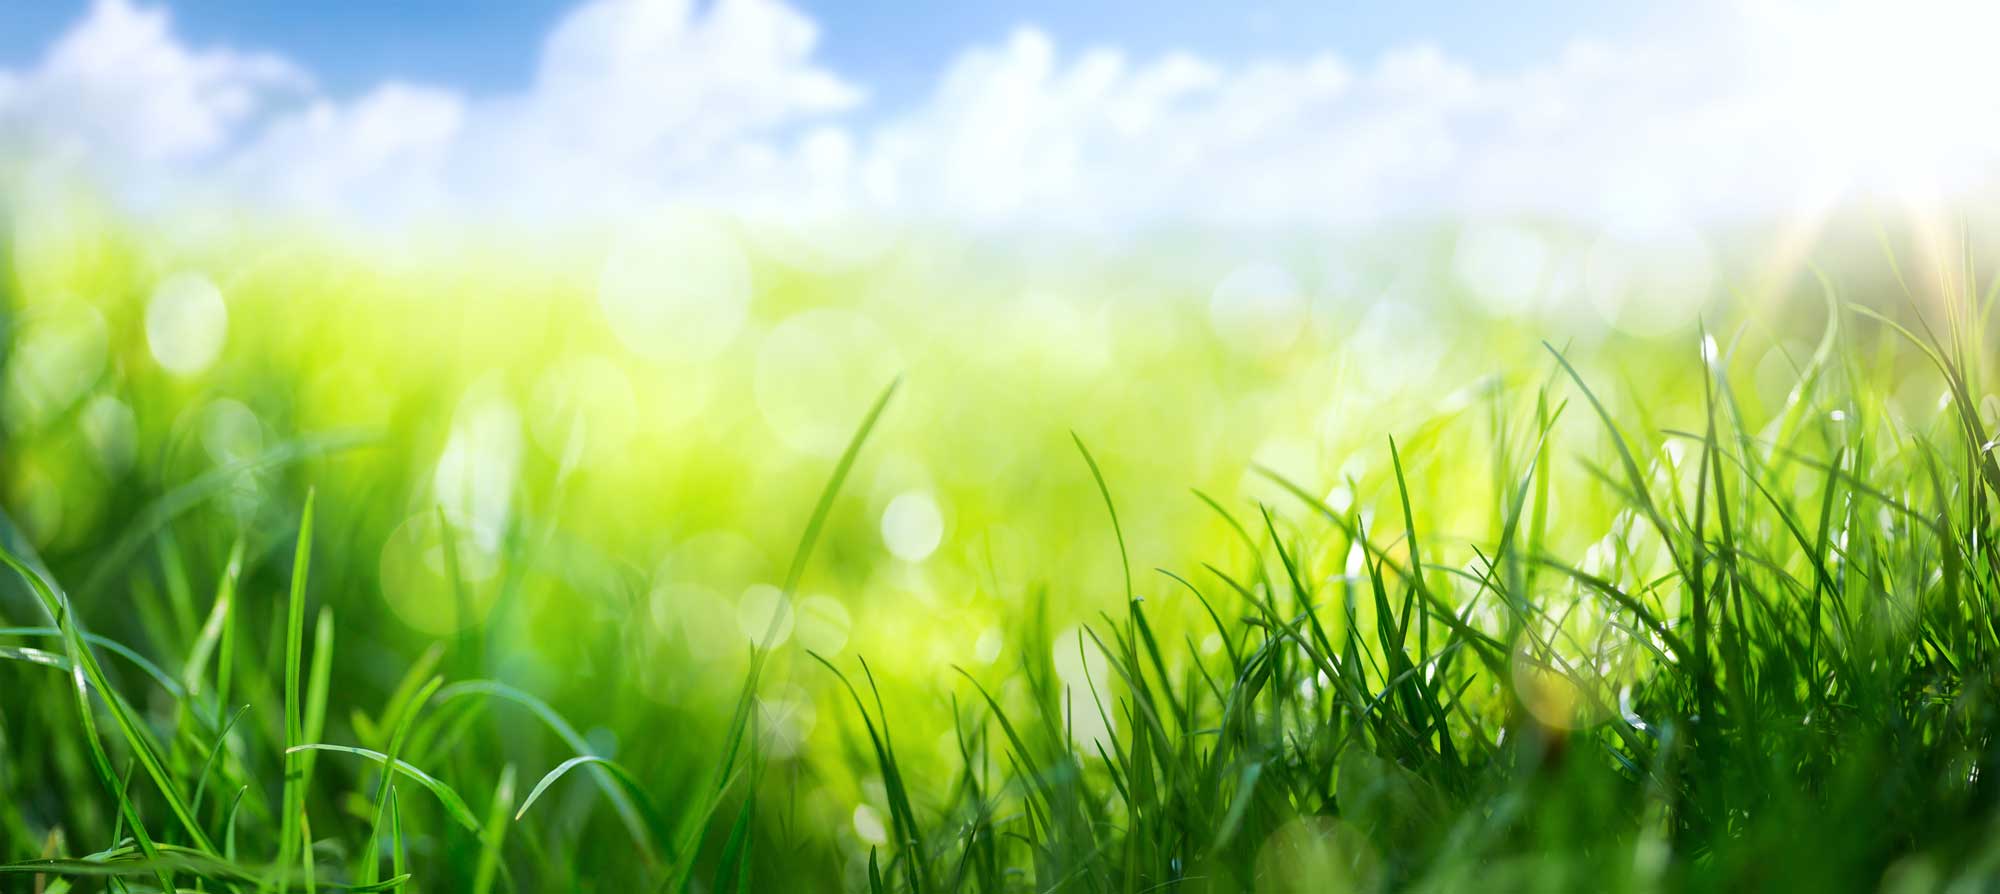 A close up of grass.